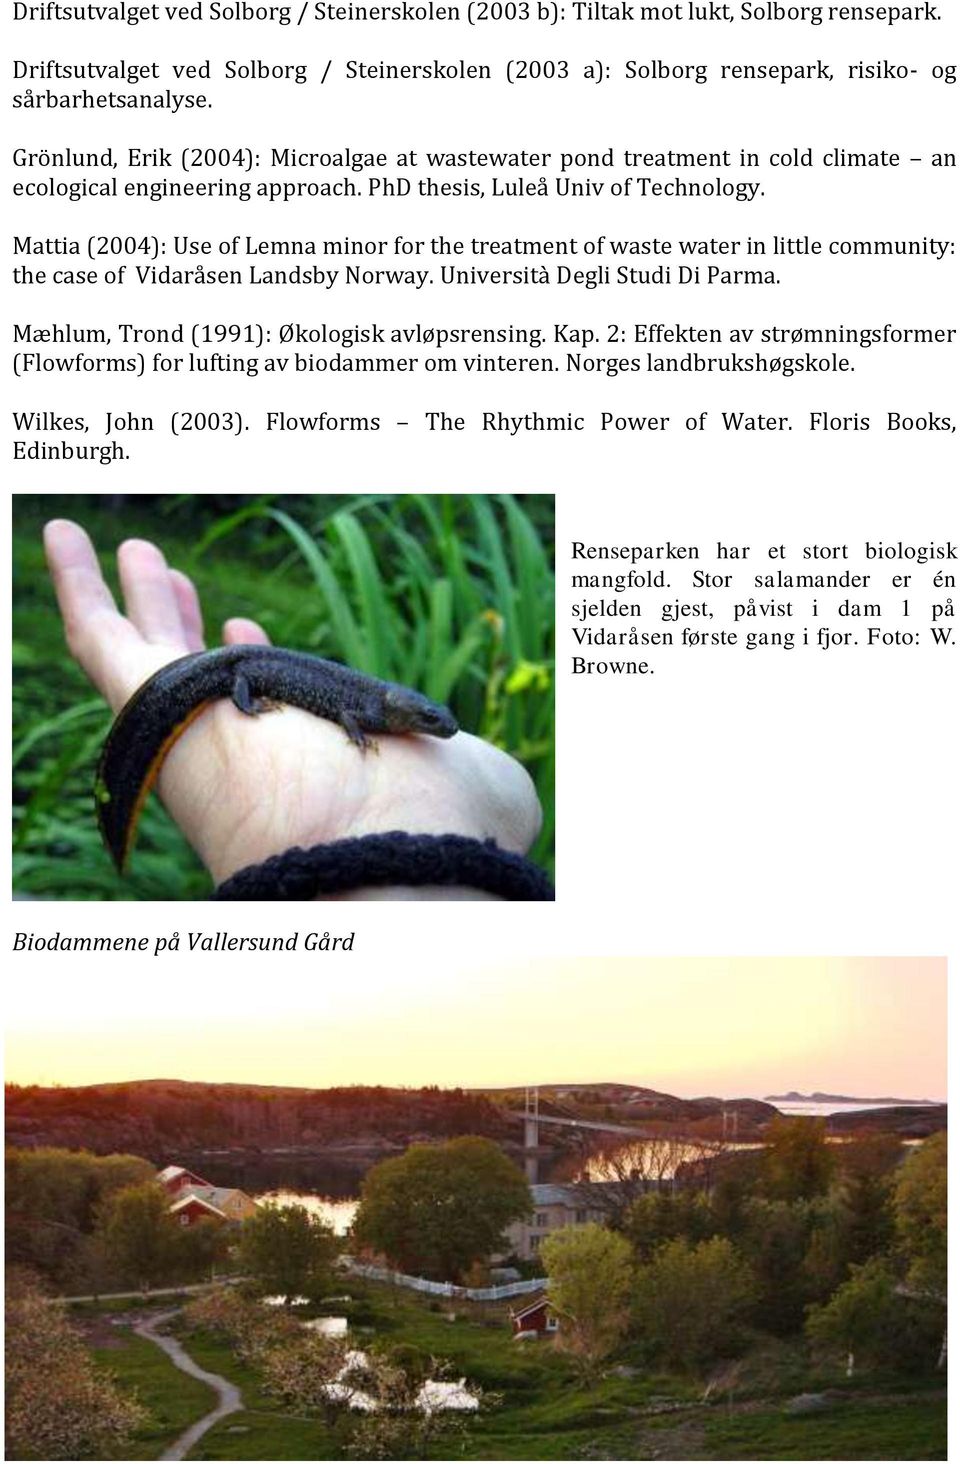 Mattia (2004): Use of Lemna minor for the treatment of waste water in little community: the case of Vidaråsen Landsby Norway. Università Degli Studi Di Parma.